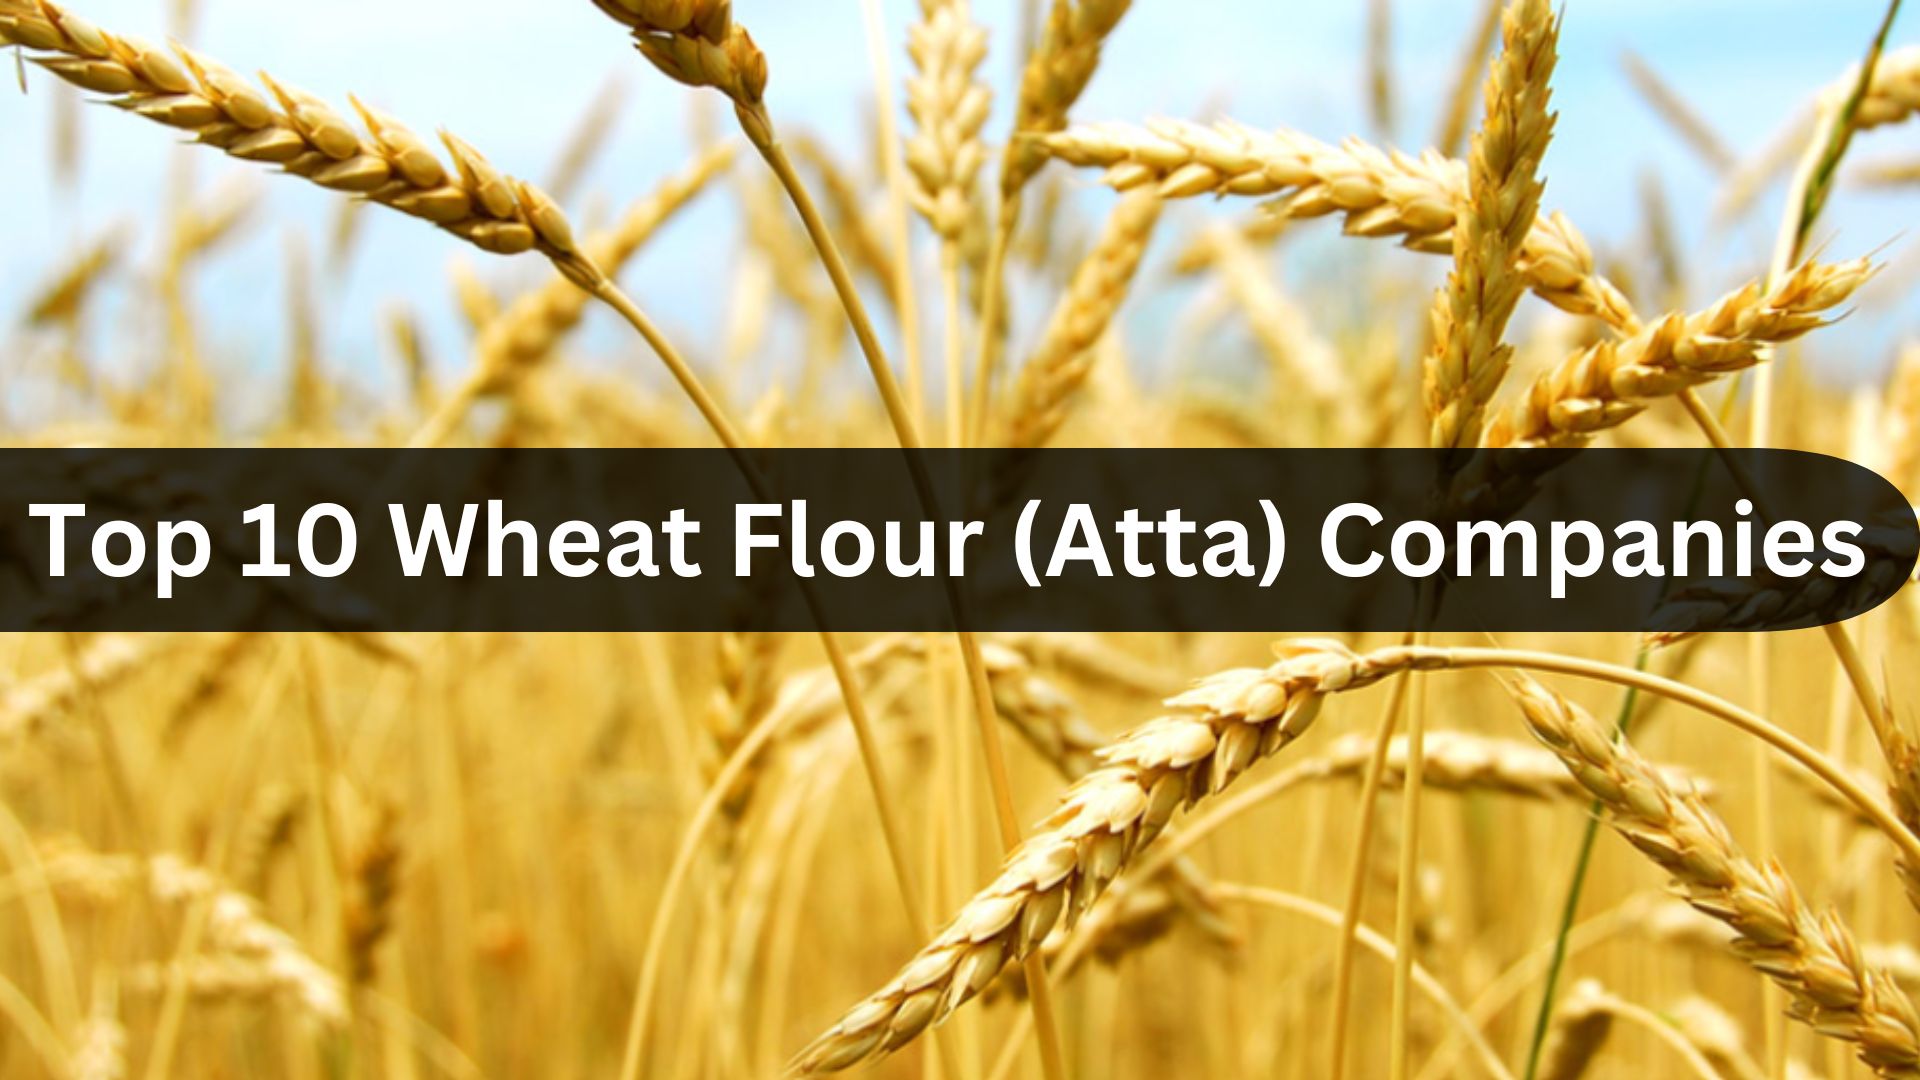 Top 10 Wheat Flour Companies